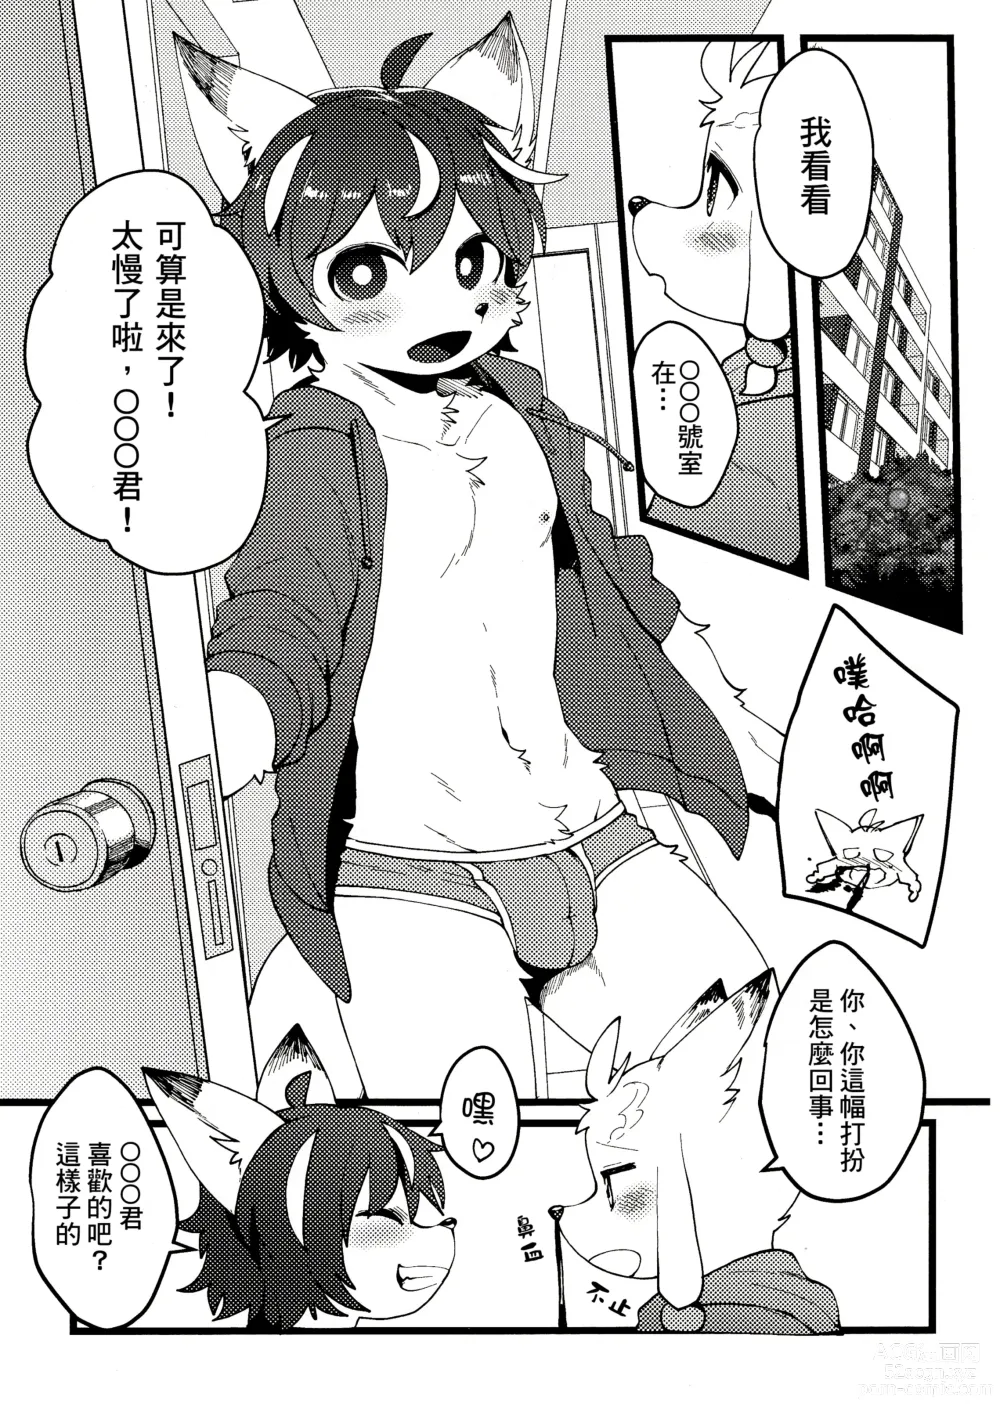 Page 5 of doujinshi 因為都是男孩子所以想做愛也沒問題吧?R